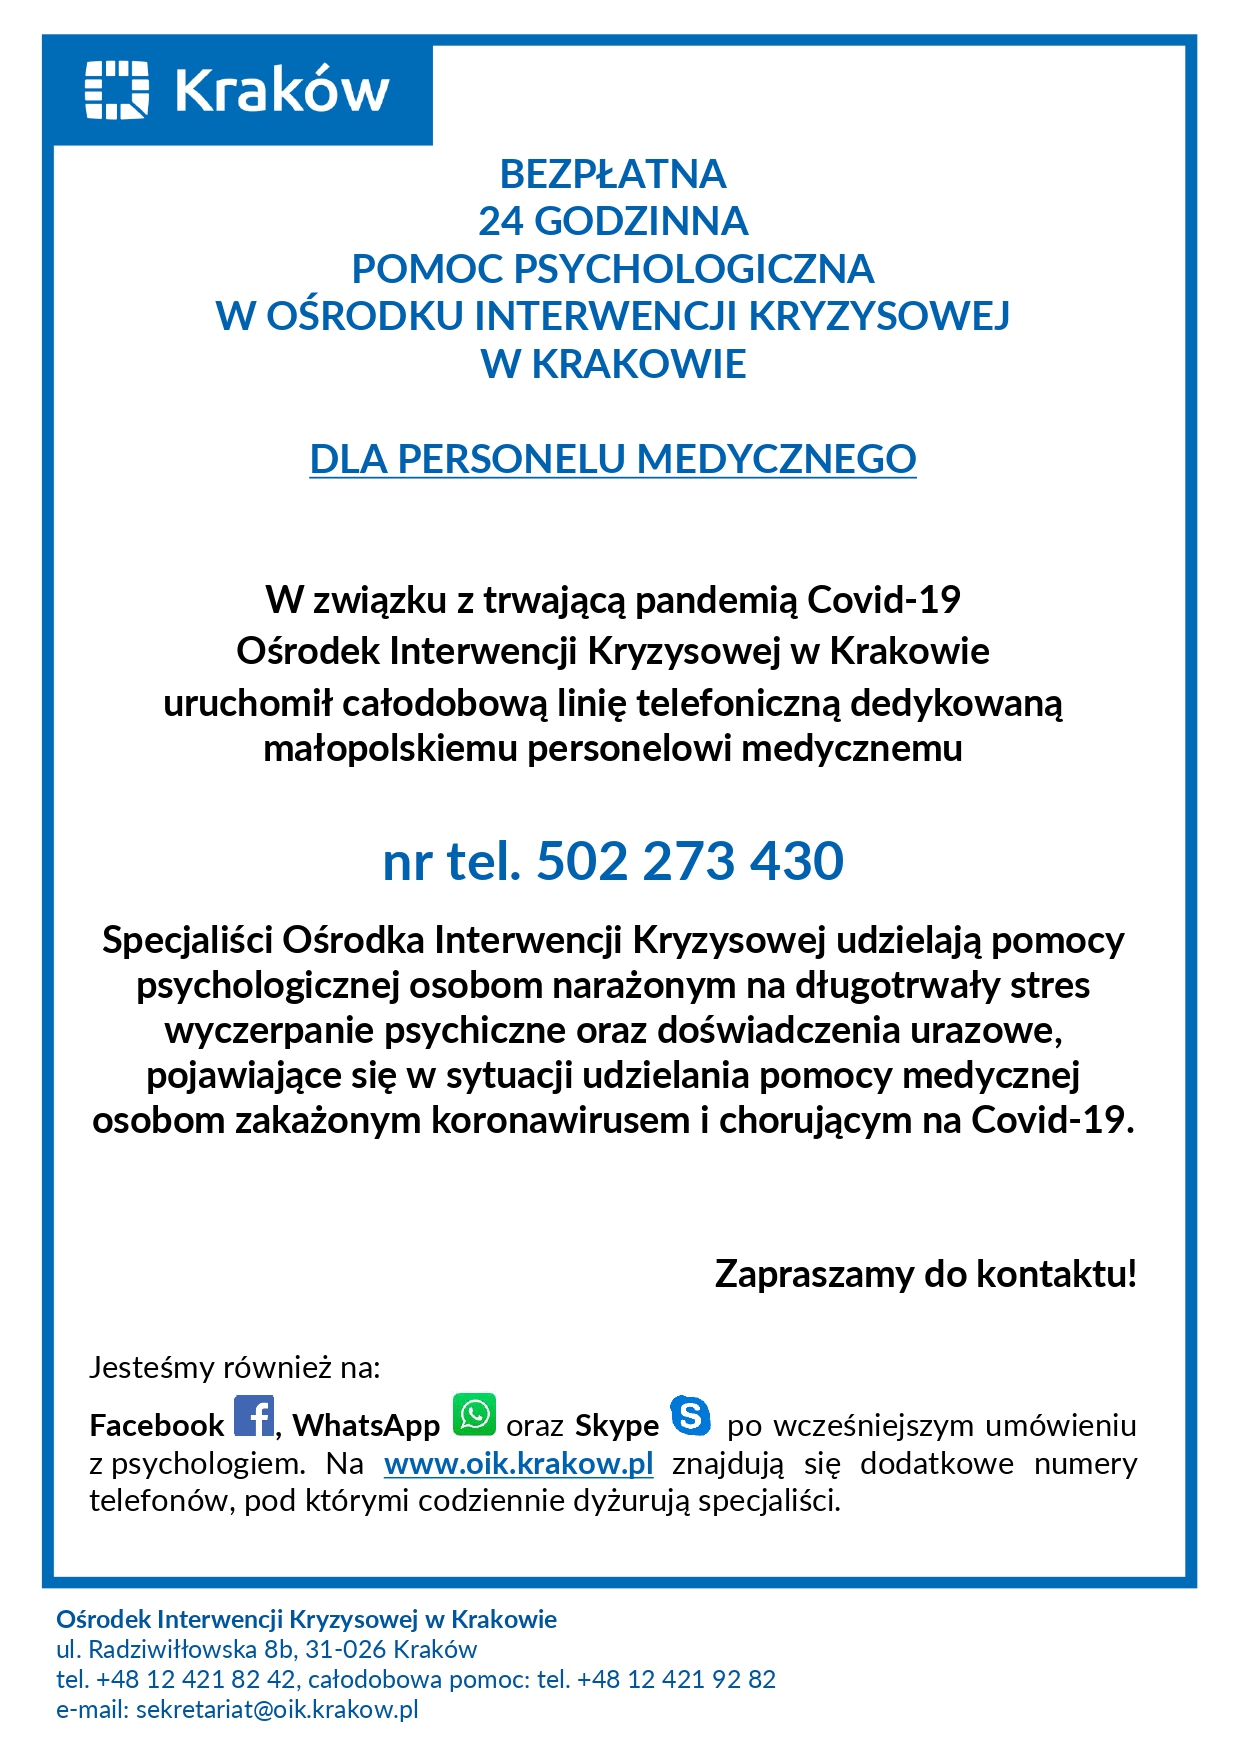 informacja OIK 24 h pomoc psychologiczna dla personelu medycznego page 0001 1